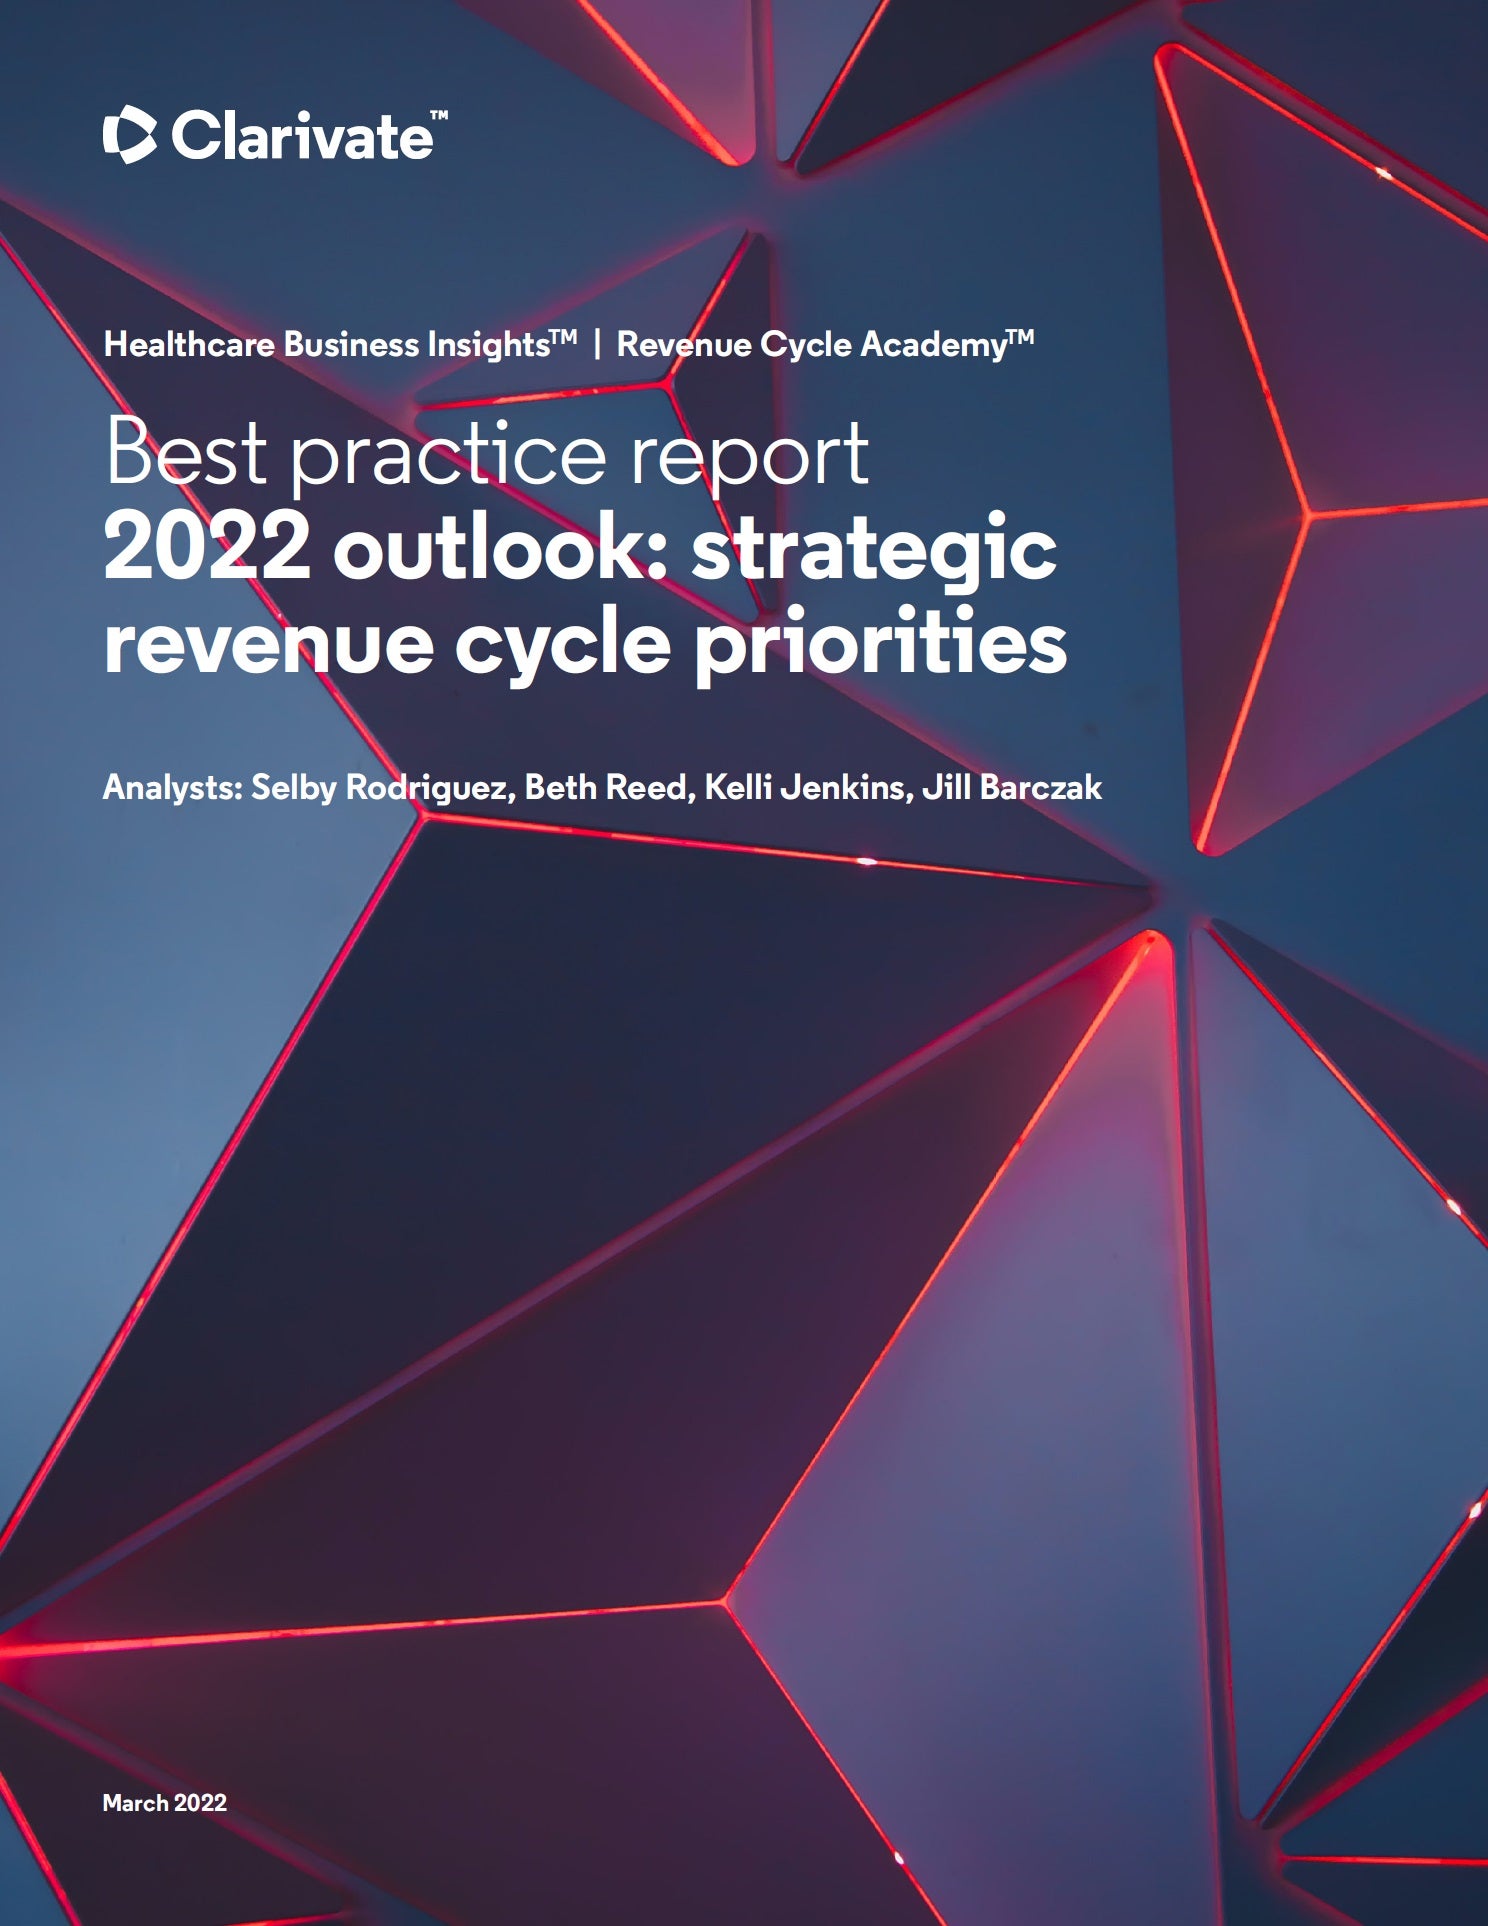 2022 outlook strategic revenue cycle priorities